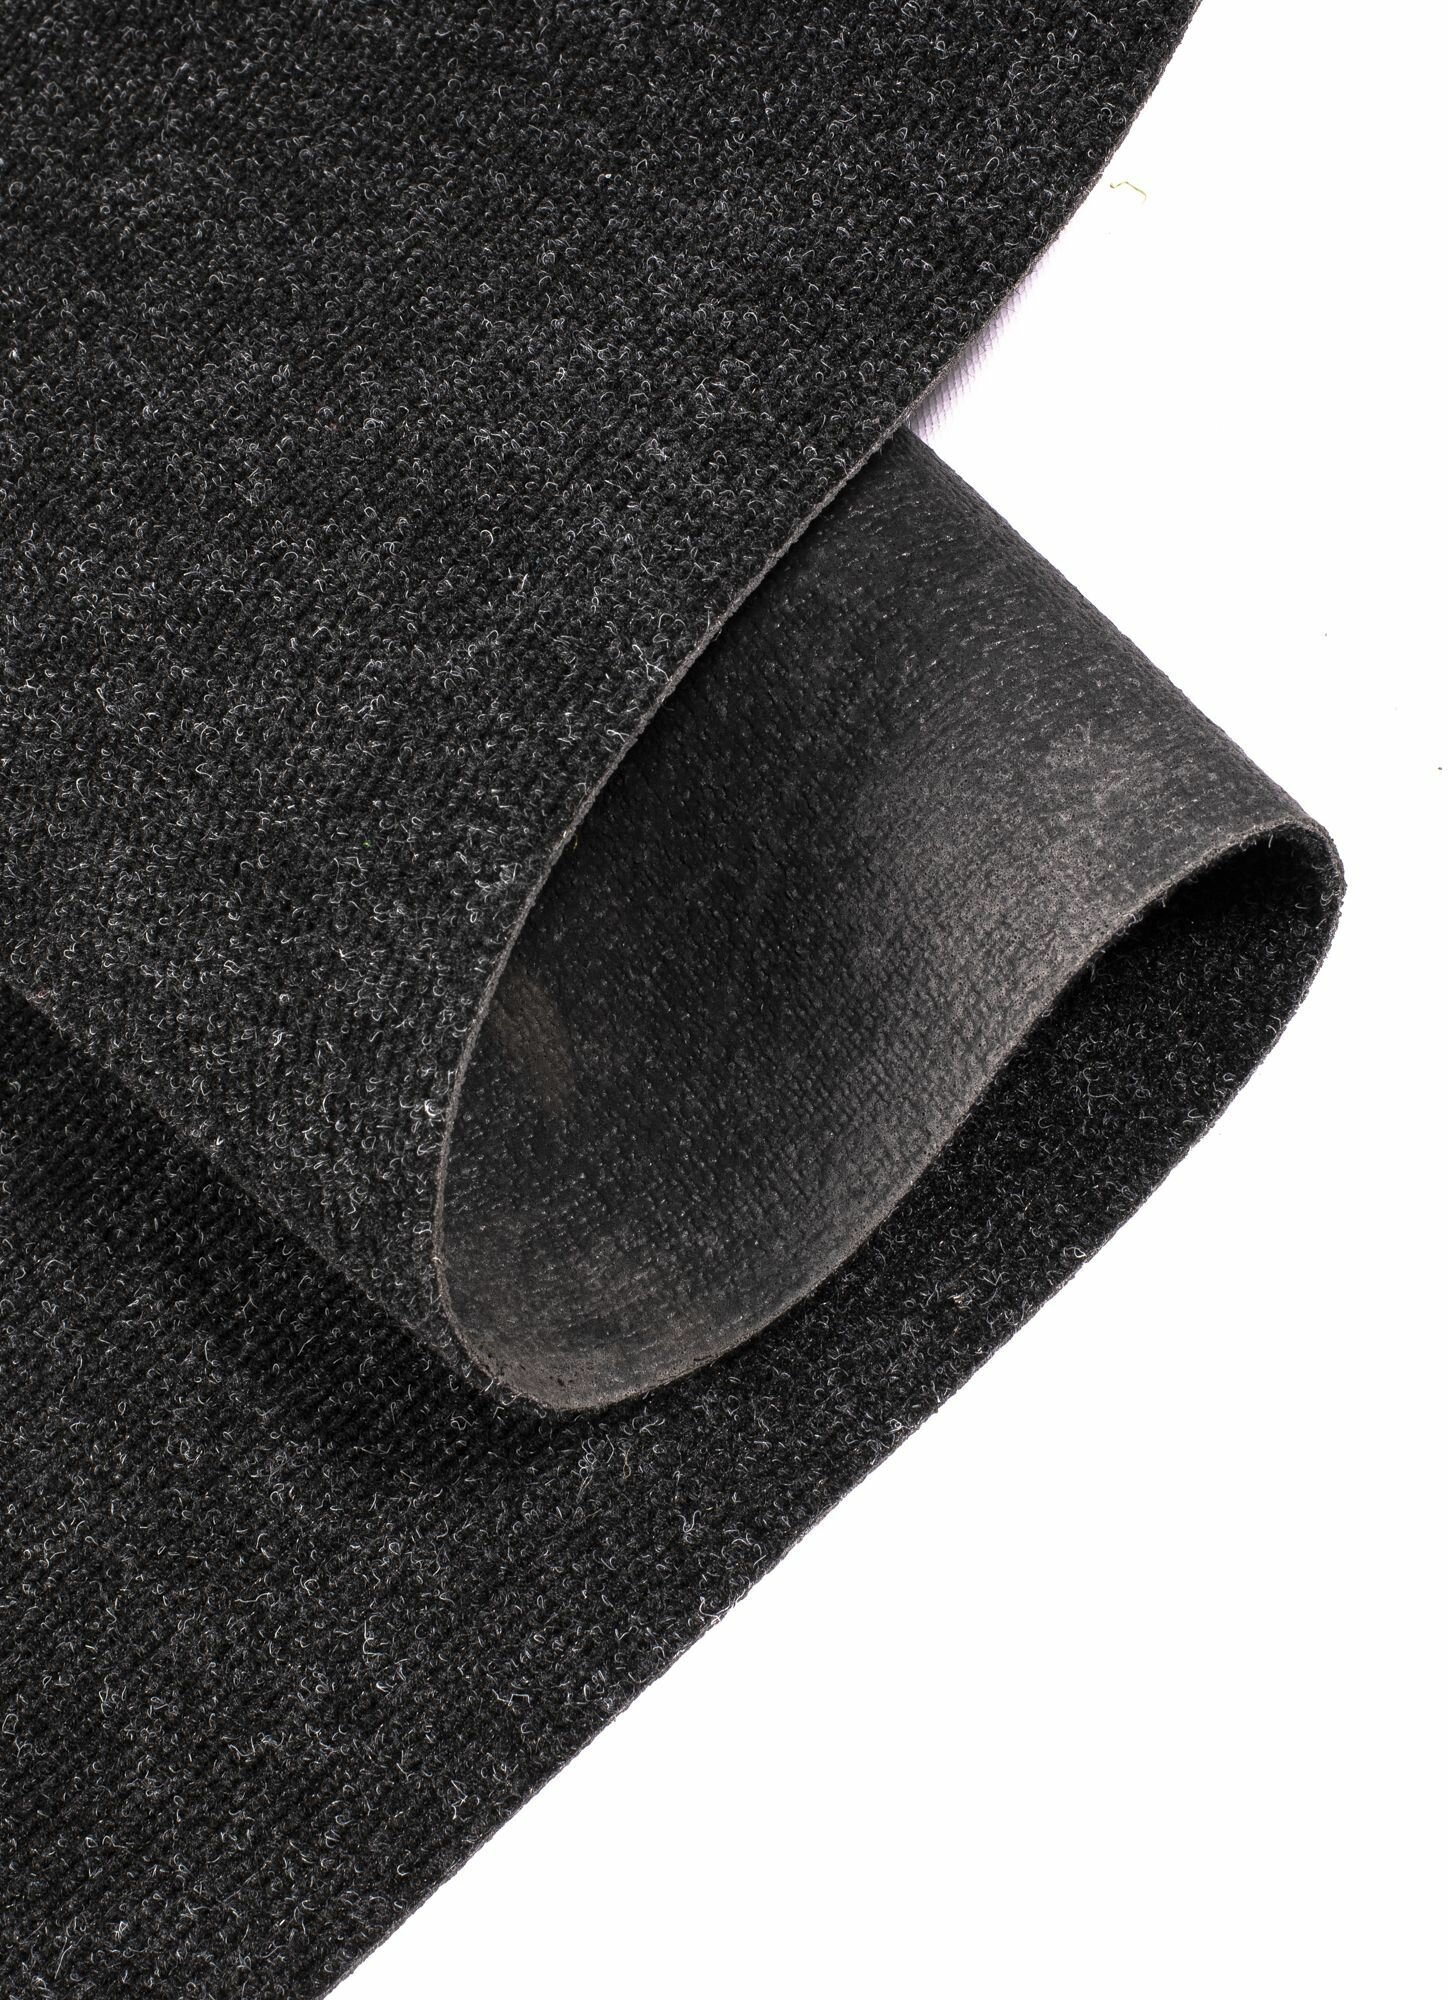 Иглопробивной коврик входной грязезащитный Betap "Dessert 78" на пол. Ковер черного цвета, размер 0,8х1м. - фотография № 5